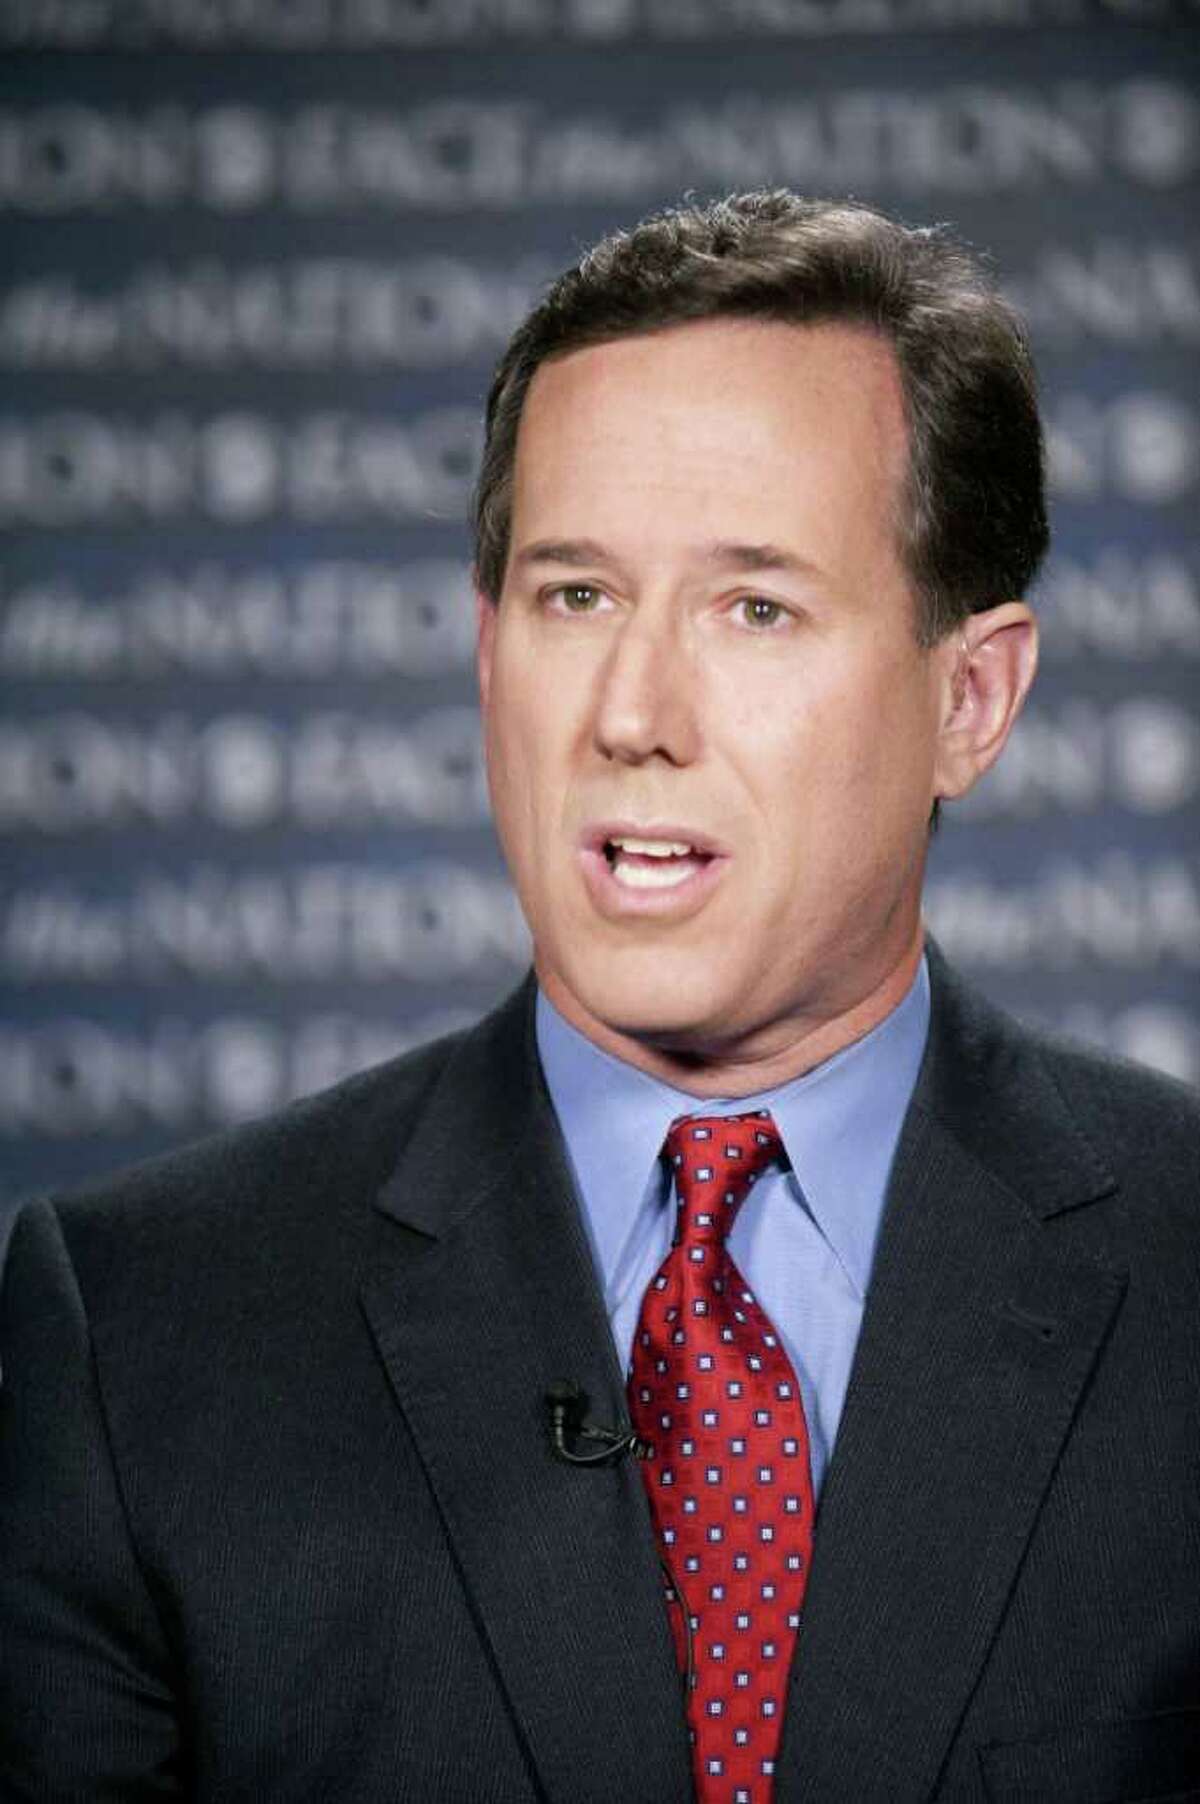 Rick Santorum said he wasn't criticizing the president's faith.